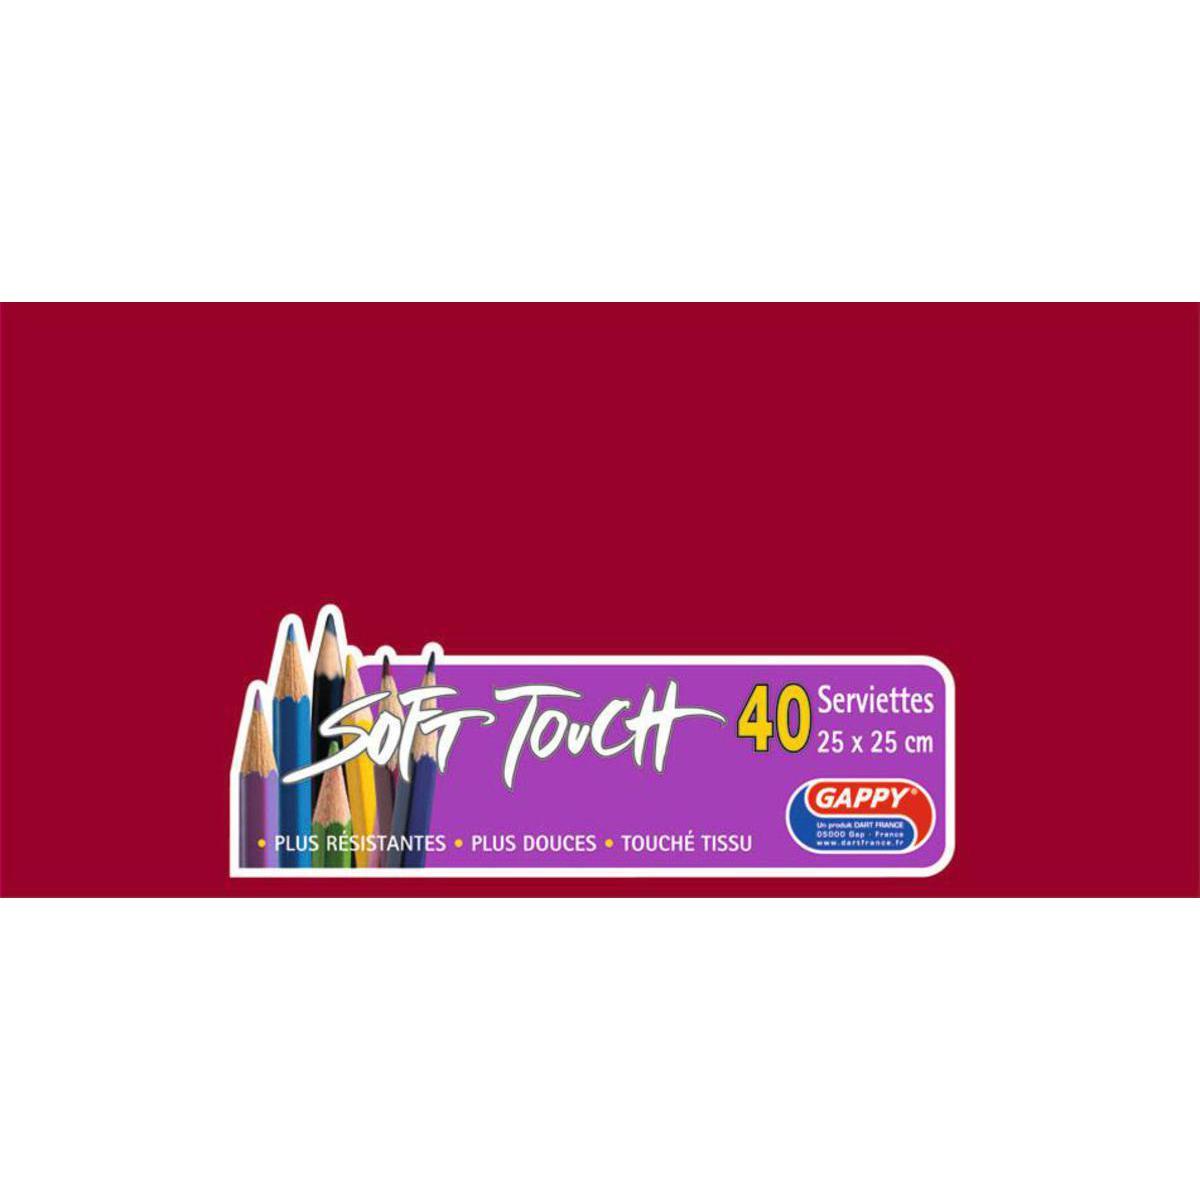 Lot de 40 serviettes Soft Touch Gappy - 25 x 25 cm - Pure Ouate de Cellulose - Rouge - Bordeaux